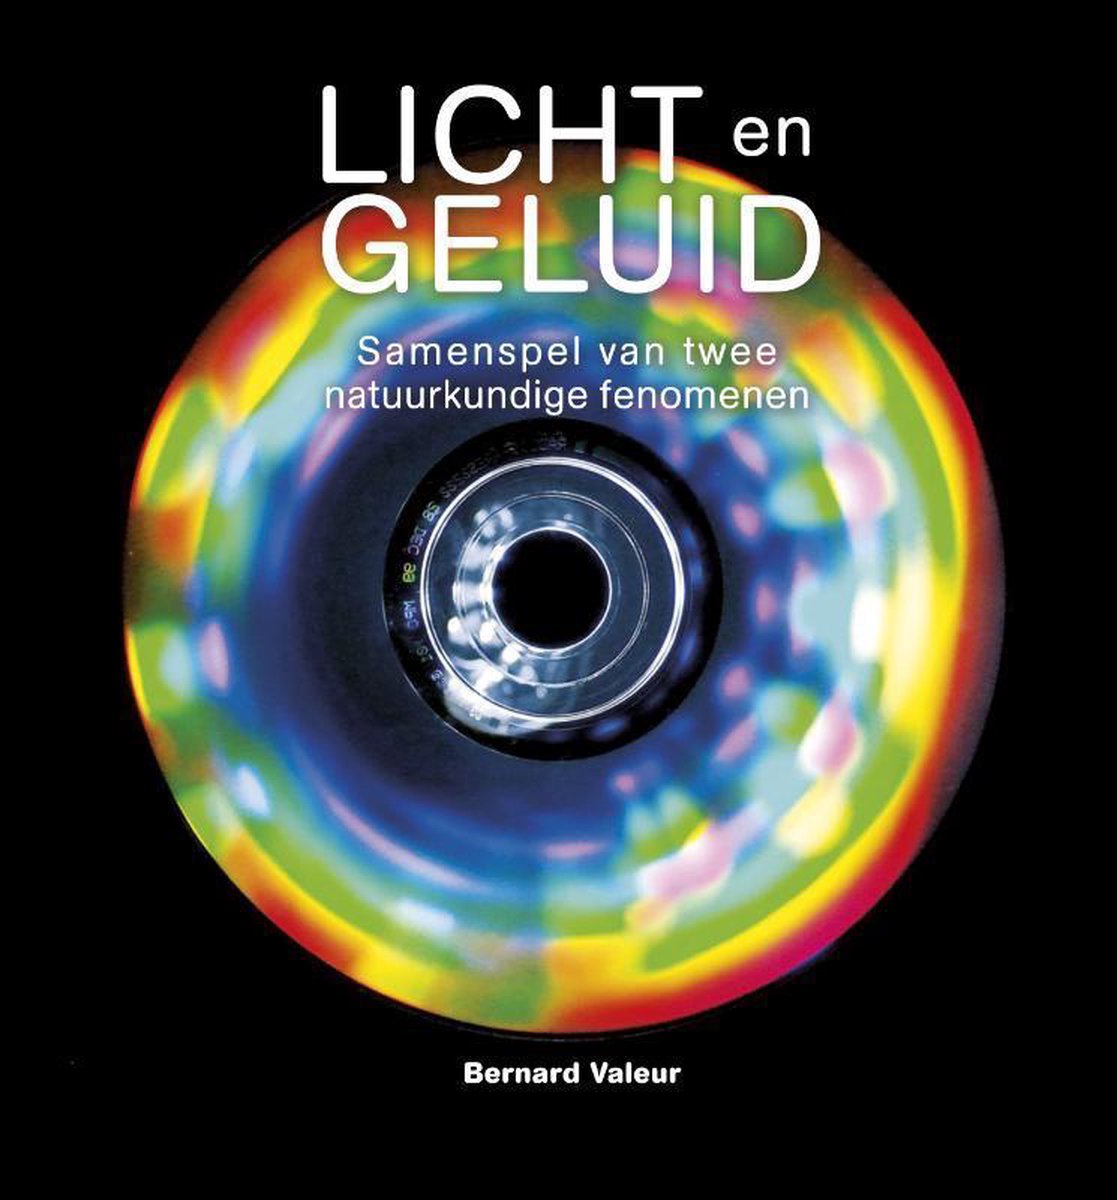 Licht en geluid. Samenspel twee natuurkundige fenomenen, Bernard Valeur |... | bol.com